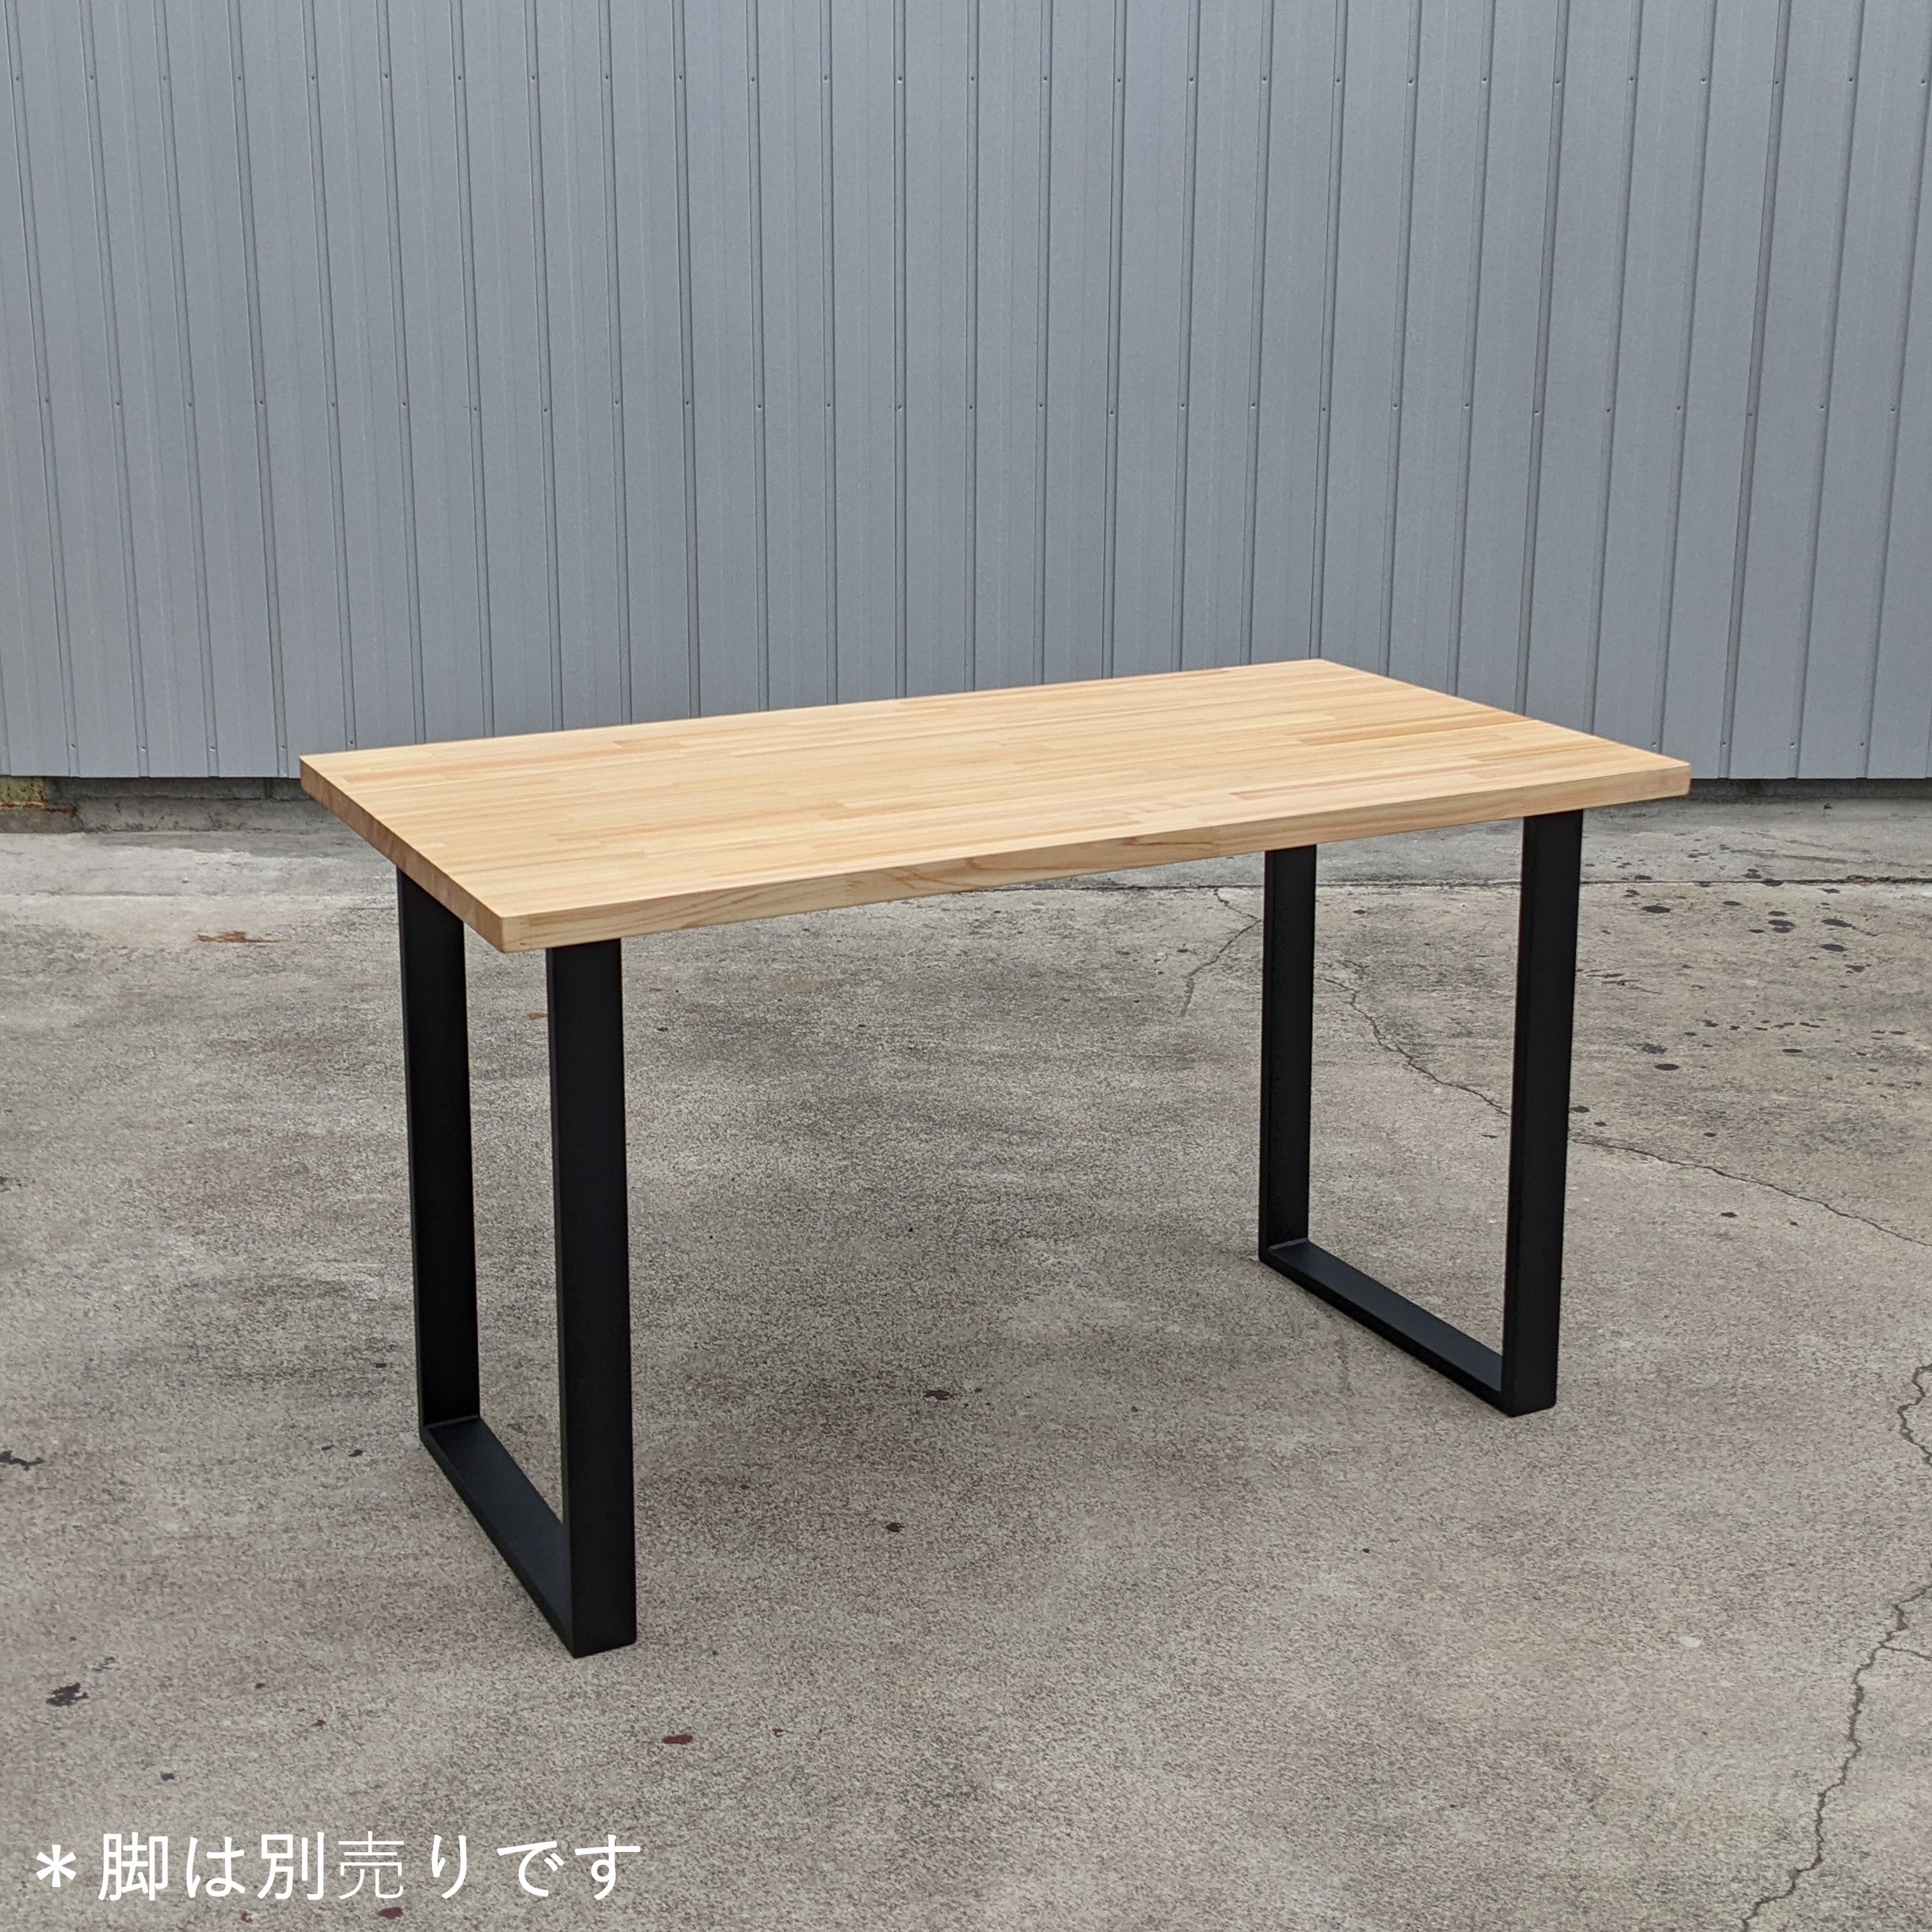 誠実 ダイニングテーブル ✳天板ヒノキ集成材 幅 ワトコオイル